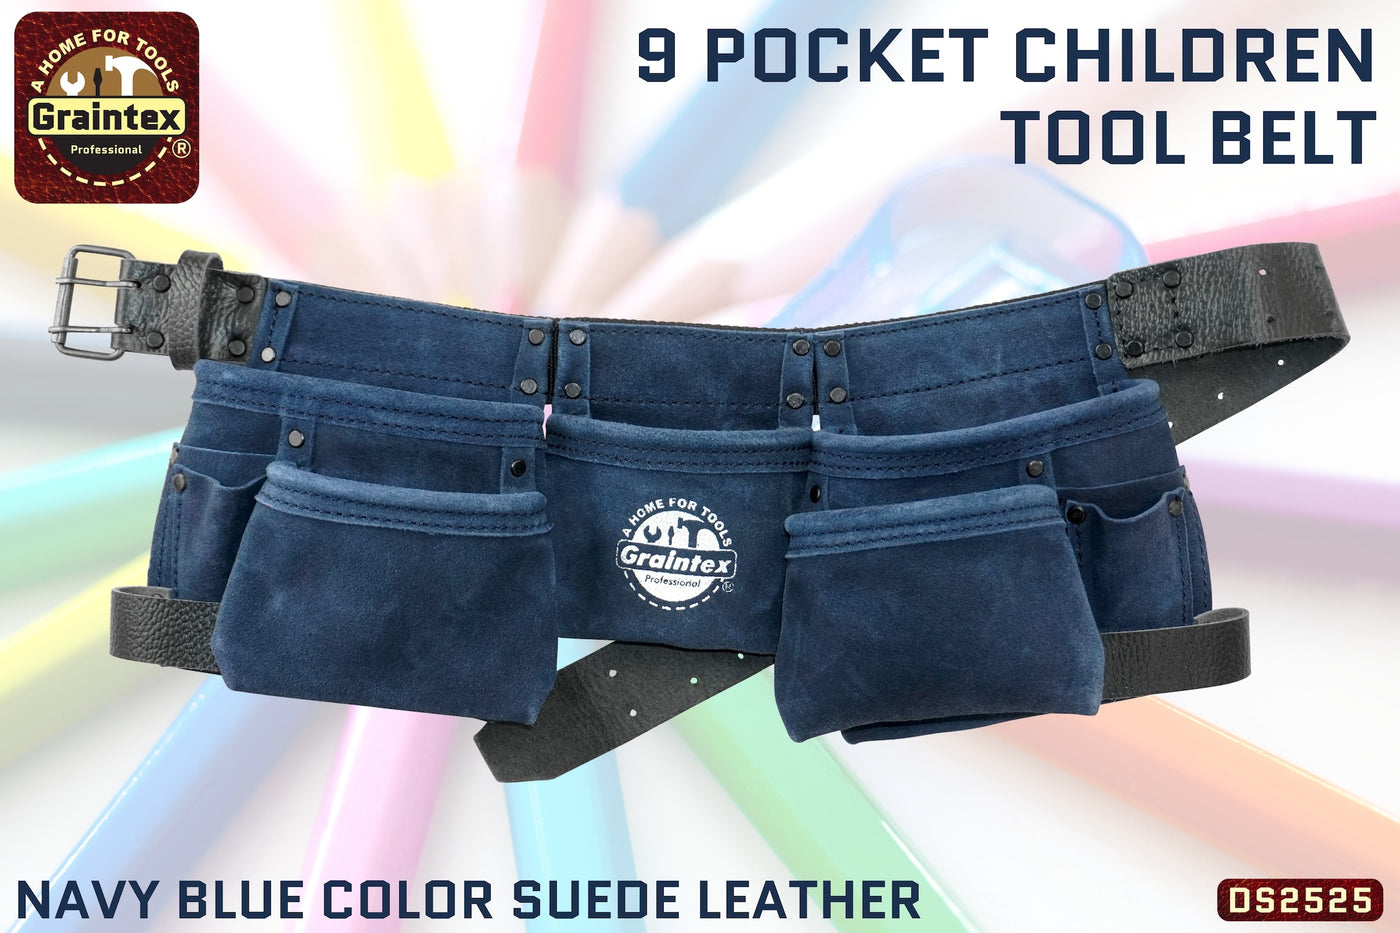 DS2525 :: 9 Pocket Children Tool Belt Navy Blue Color Suede Leather